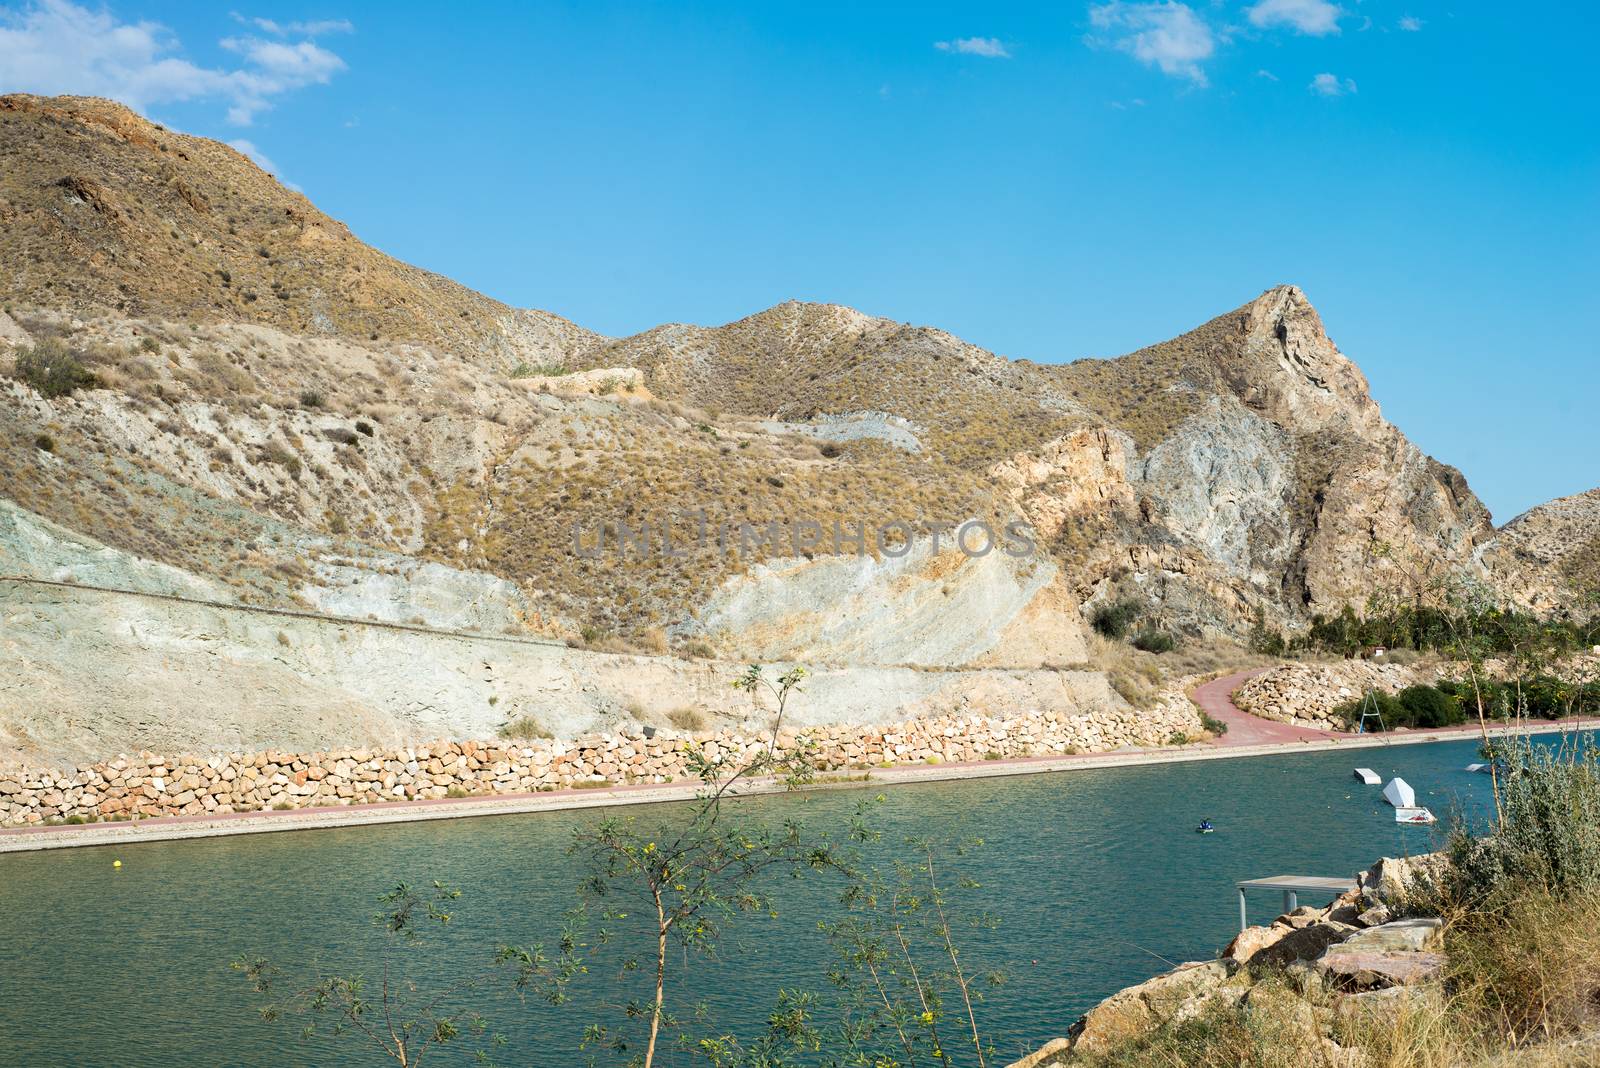 Scenic view on the Cuevas del Almanzora reservoir, Spain